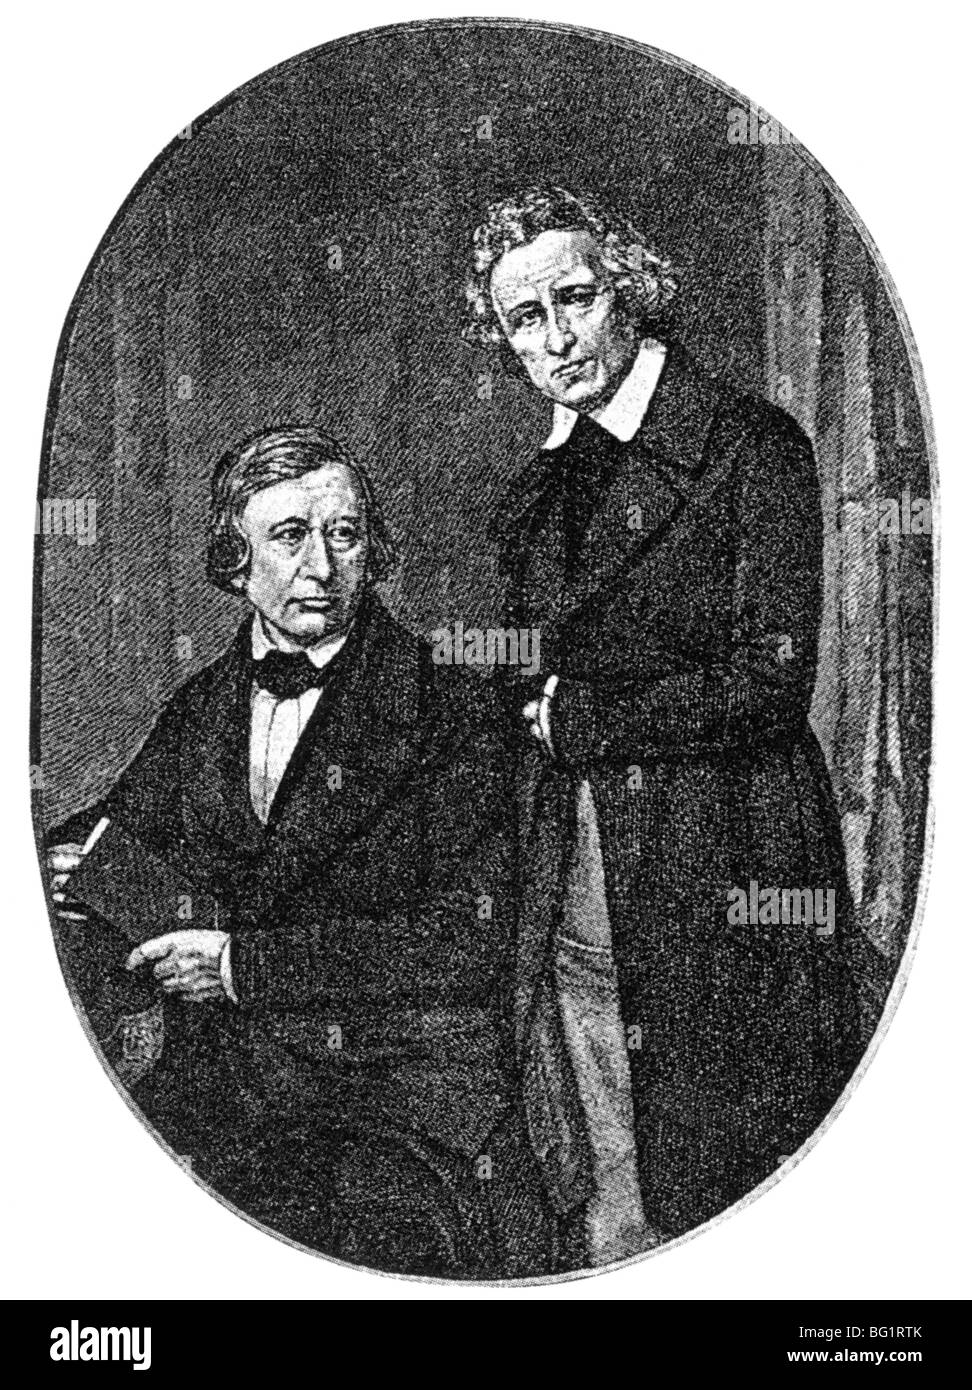 Frères Grimm des universitaires allemands qui ont recueilli des récits populaires et des recherches sur la langue allemande. Wilhelm Grimm à gauche et Jacob Banque D'Images